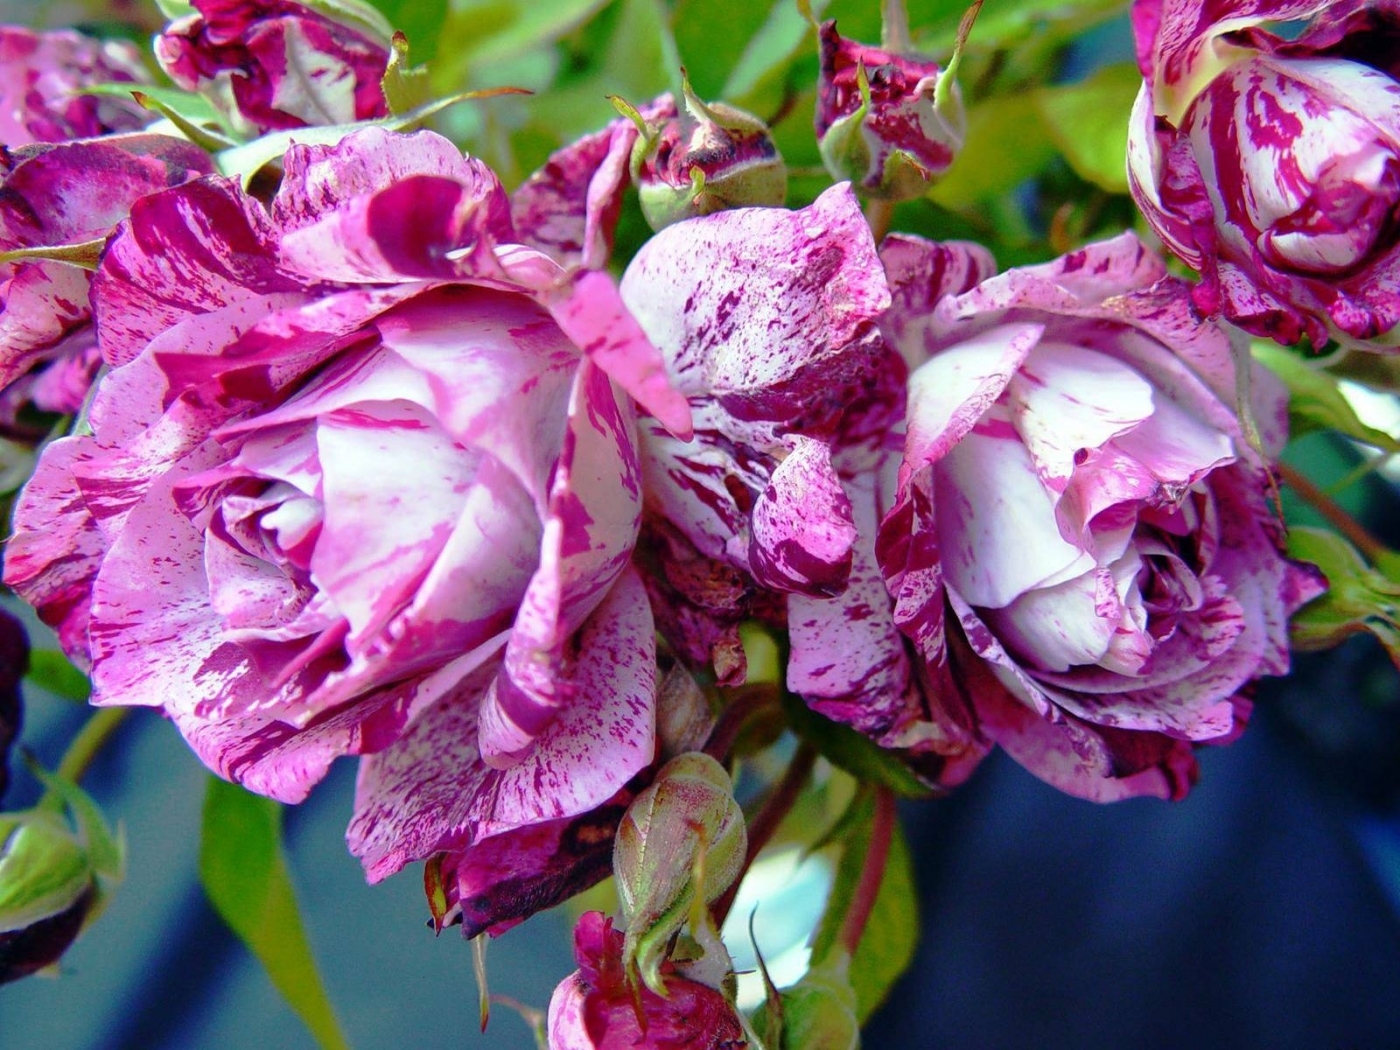 Скачать обои бесплатно Цветы, Розы, Растения картинка на рабочий стол ПК